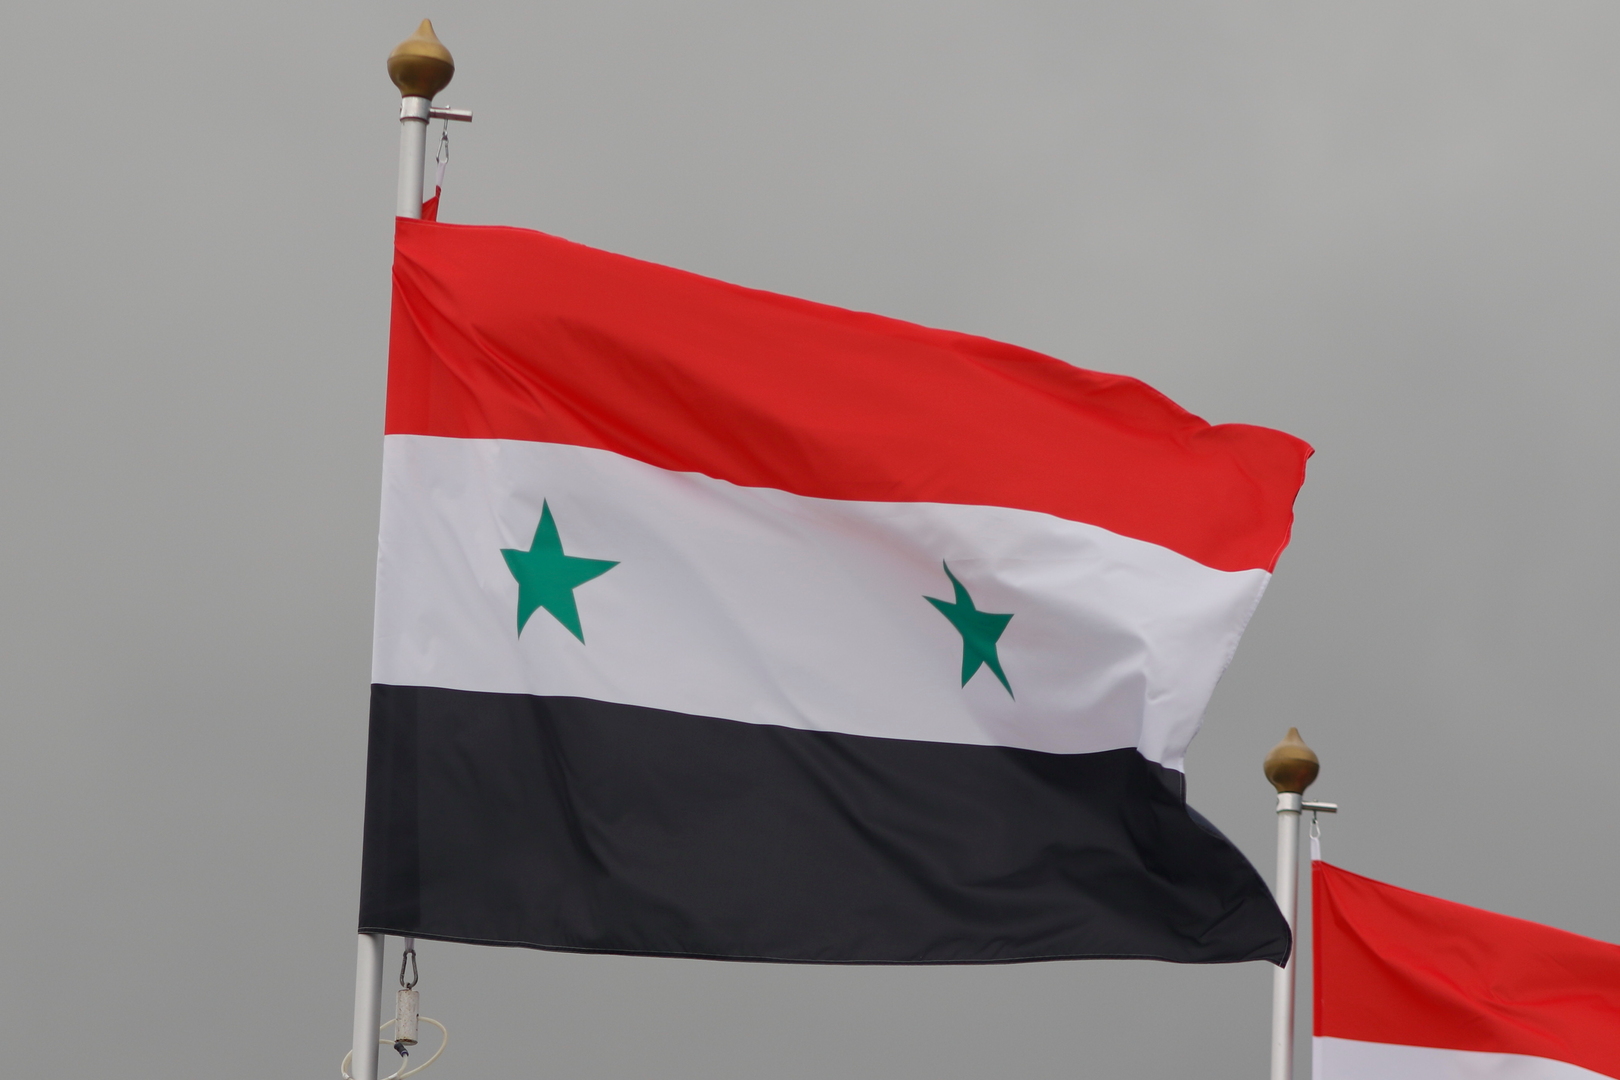 منتدى اقتصادي سوري - أردني في دمشق